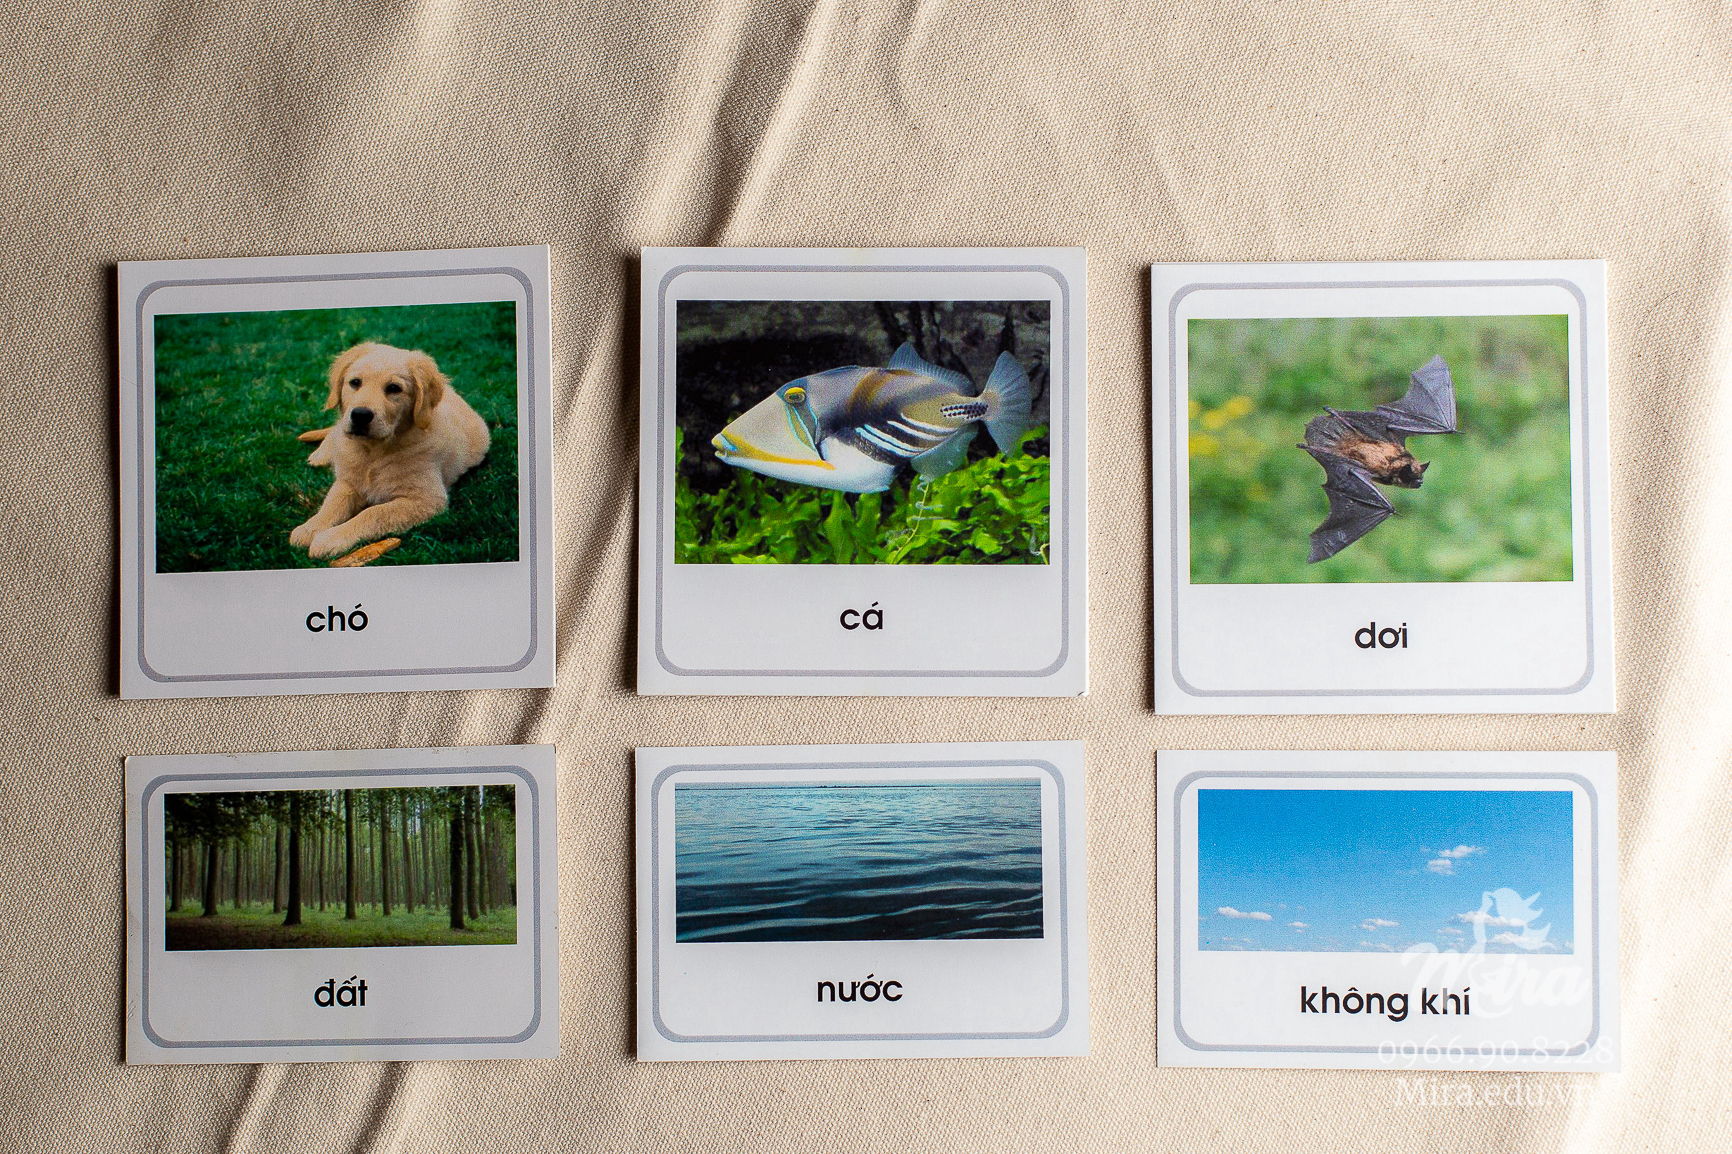 File thiết kế thẻ phân loại động vật theo môi trường sống - Tiếng Việt